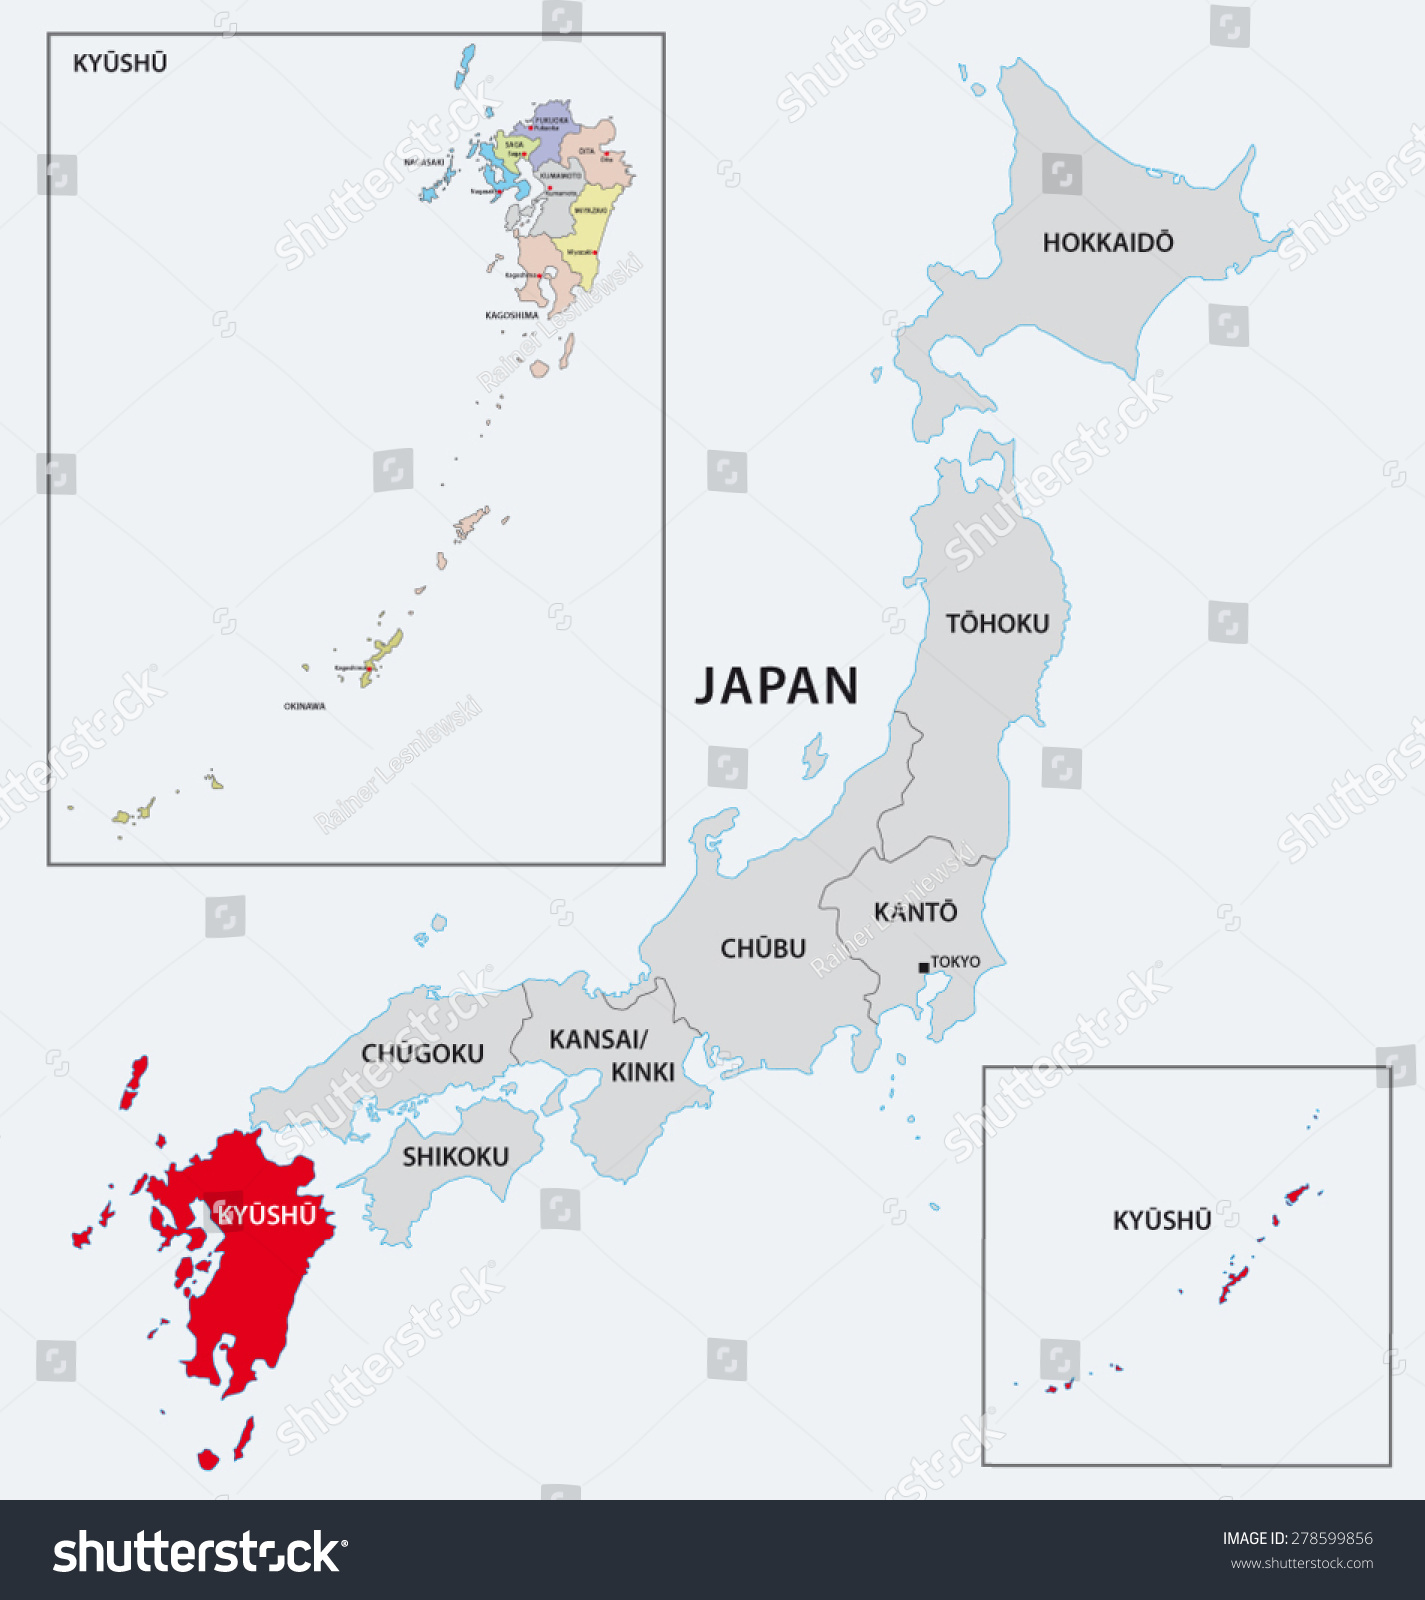 日本九州地区地图-交通运输-海洛创意(HelloRF